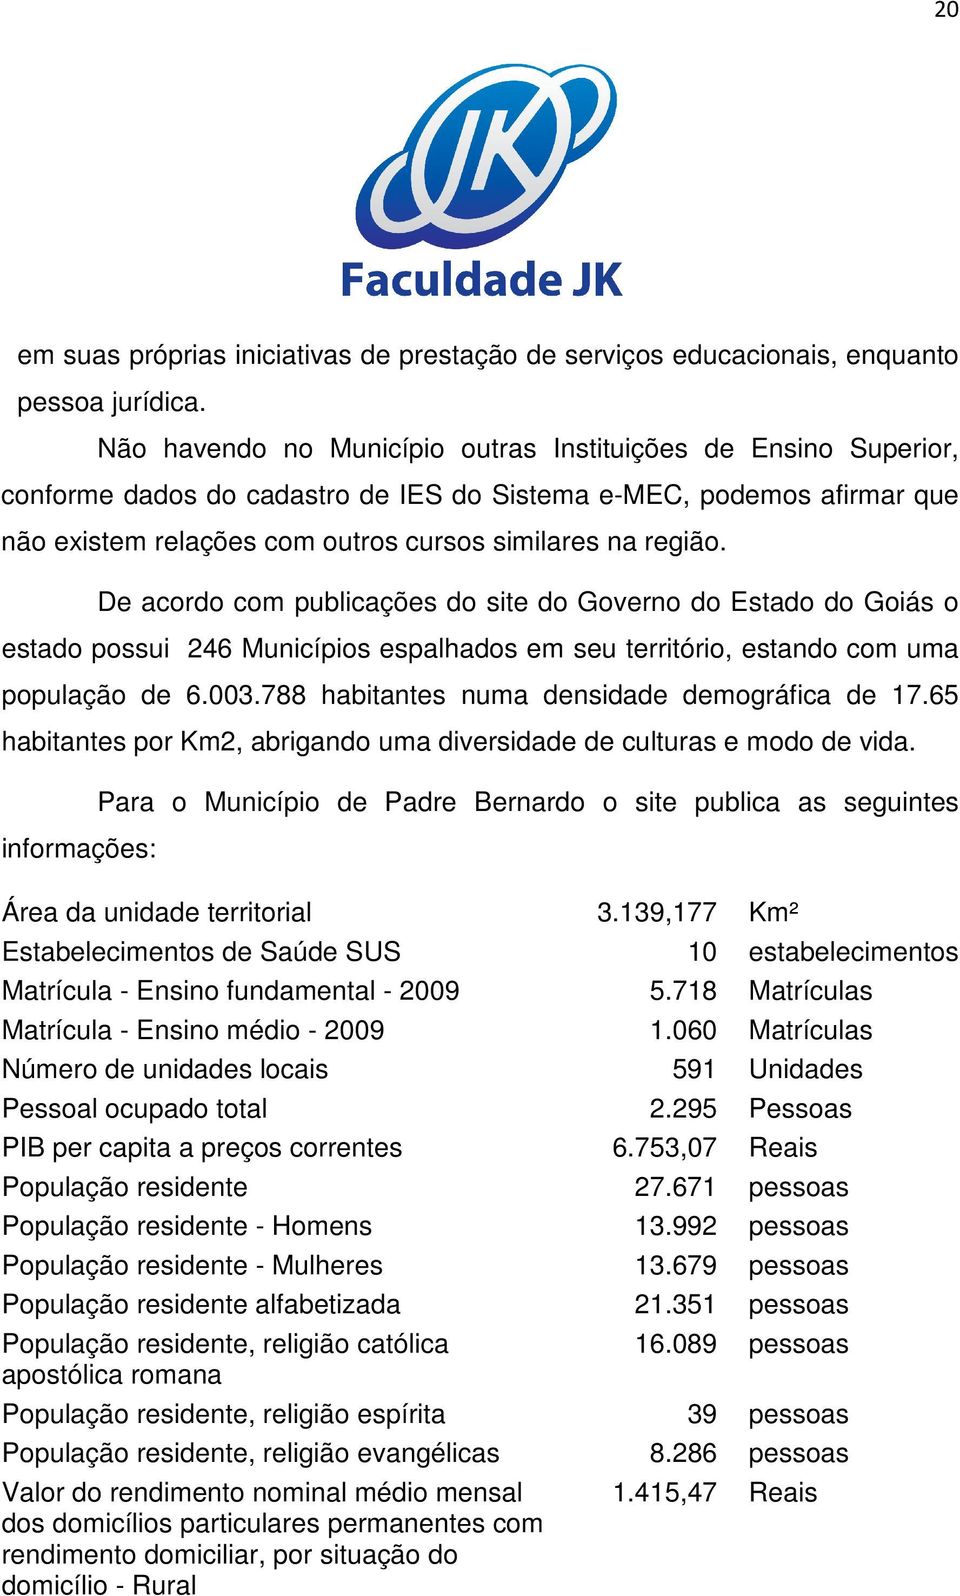 De acordo com publicações do site do Governo do Estado do Goiás o estado possui 246 Municípios espalhados em seu território, estando com uma população de 6.003.